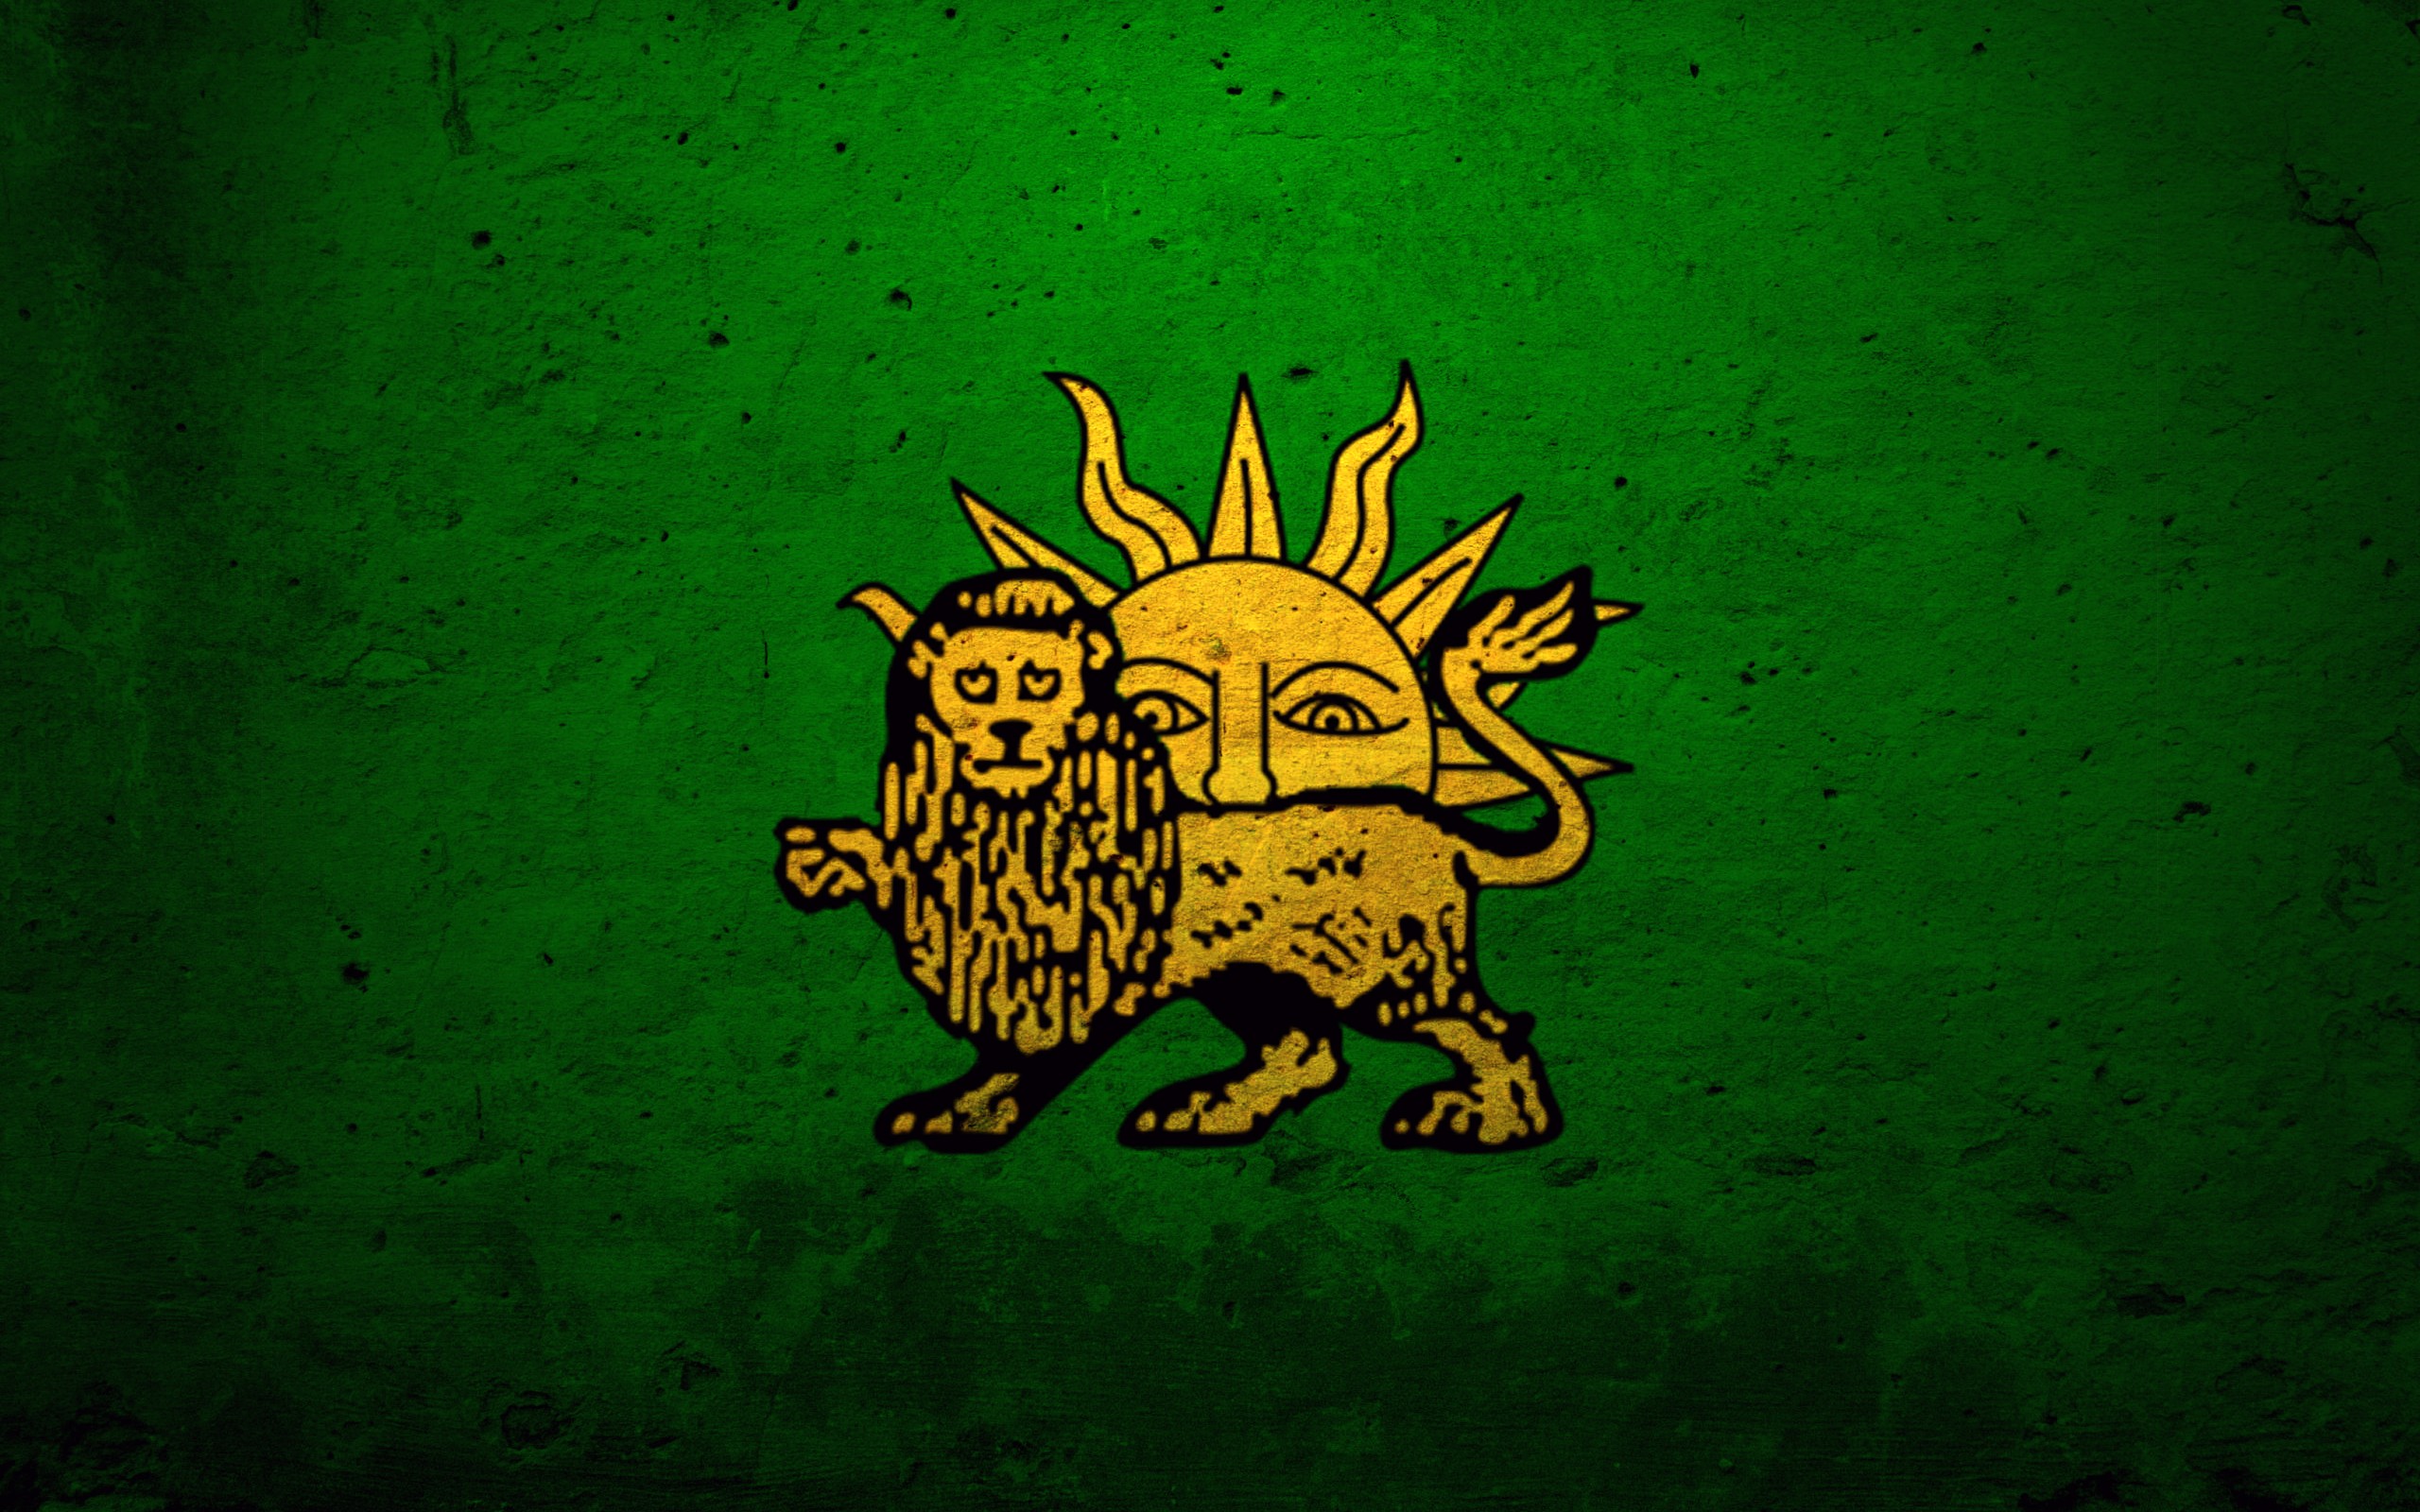 General 2560x1600 lion Sun green background green digital art